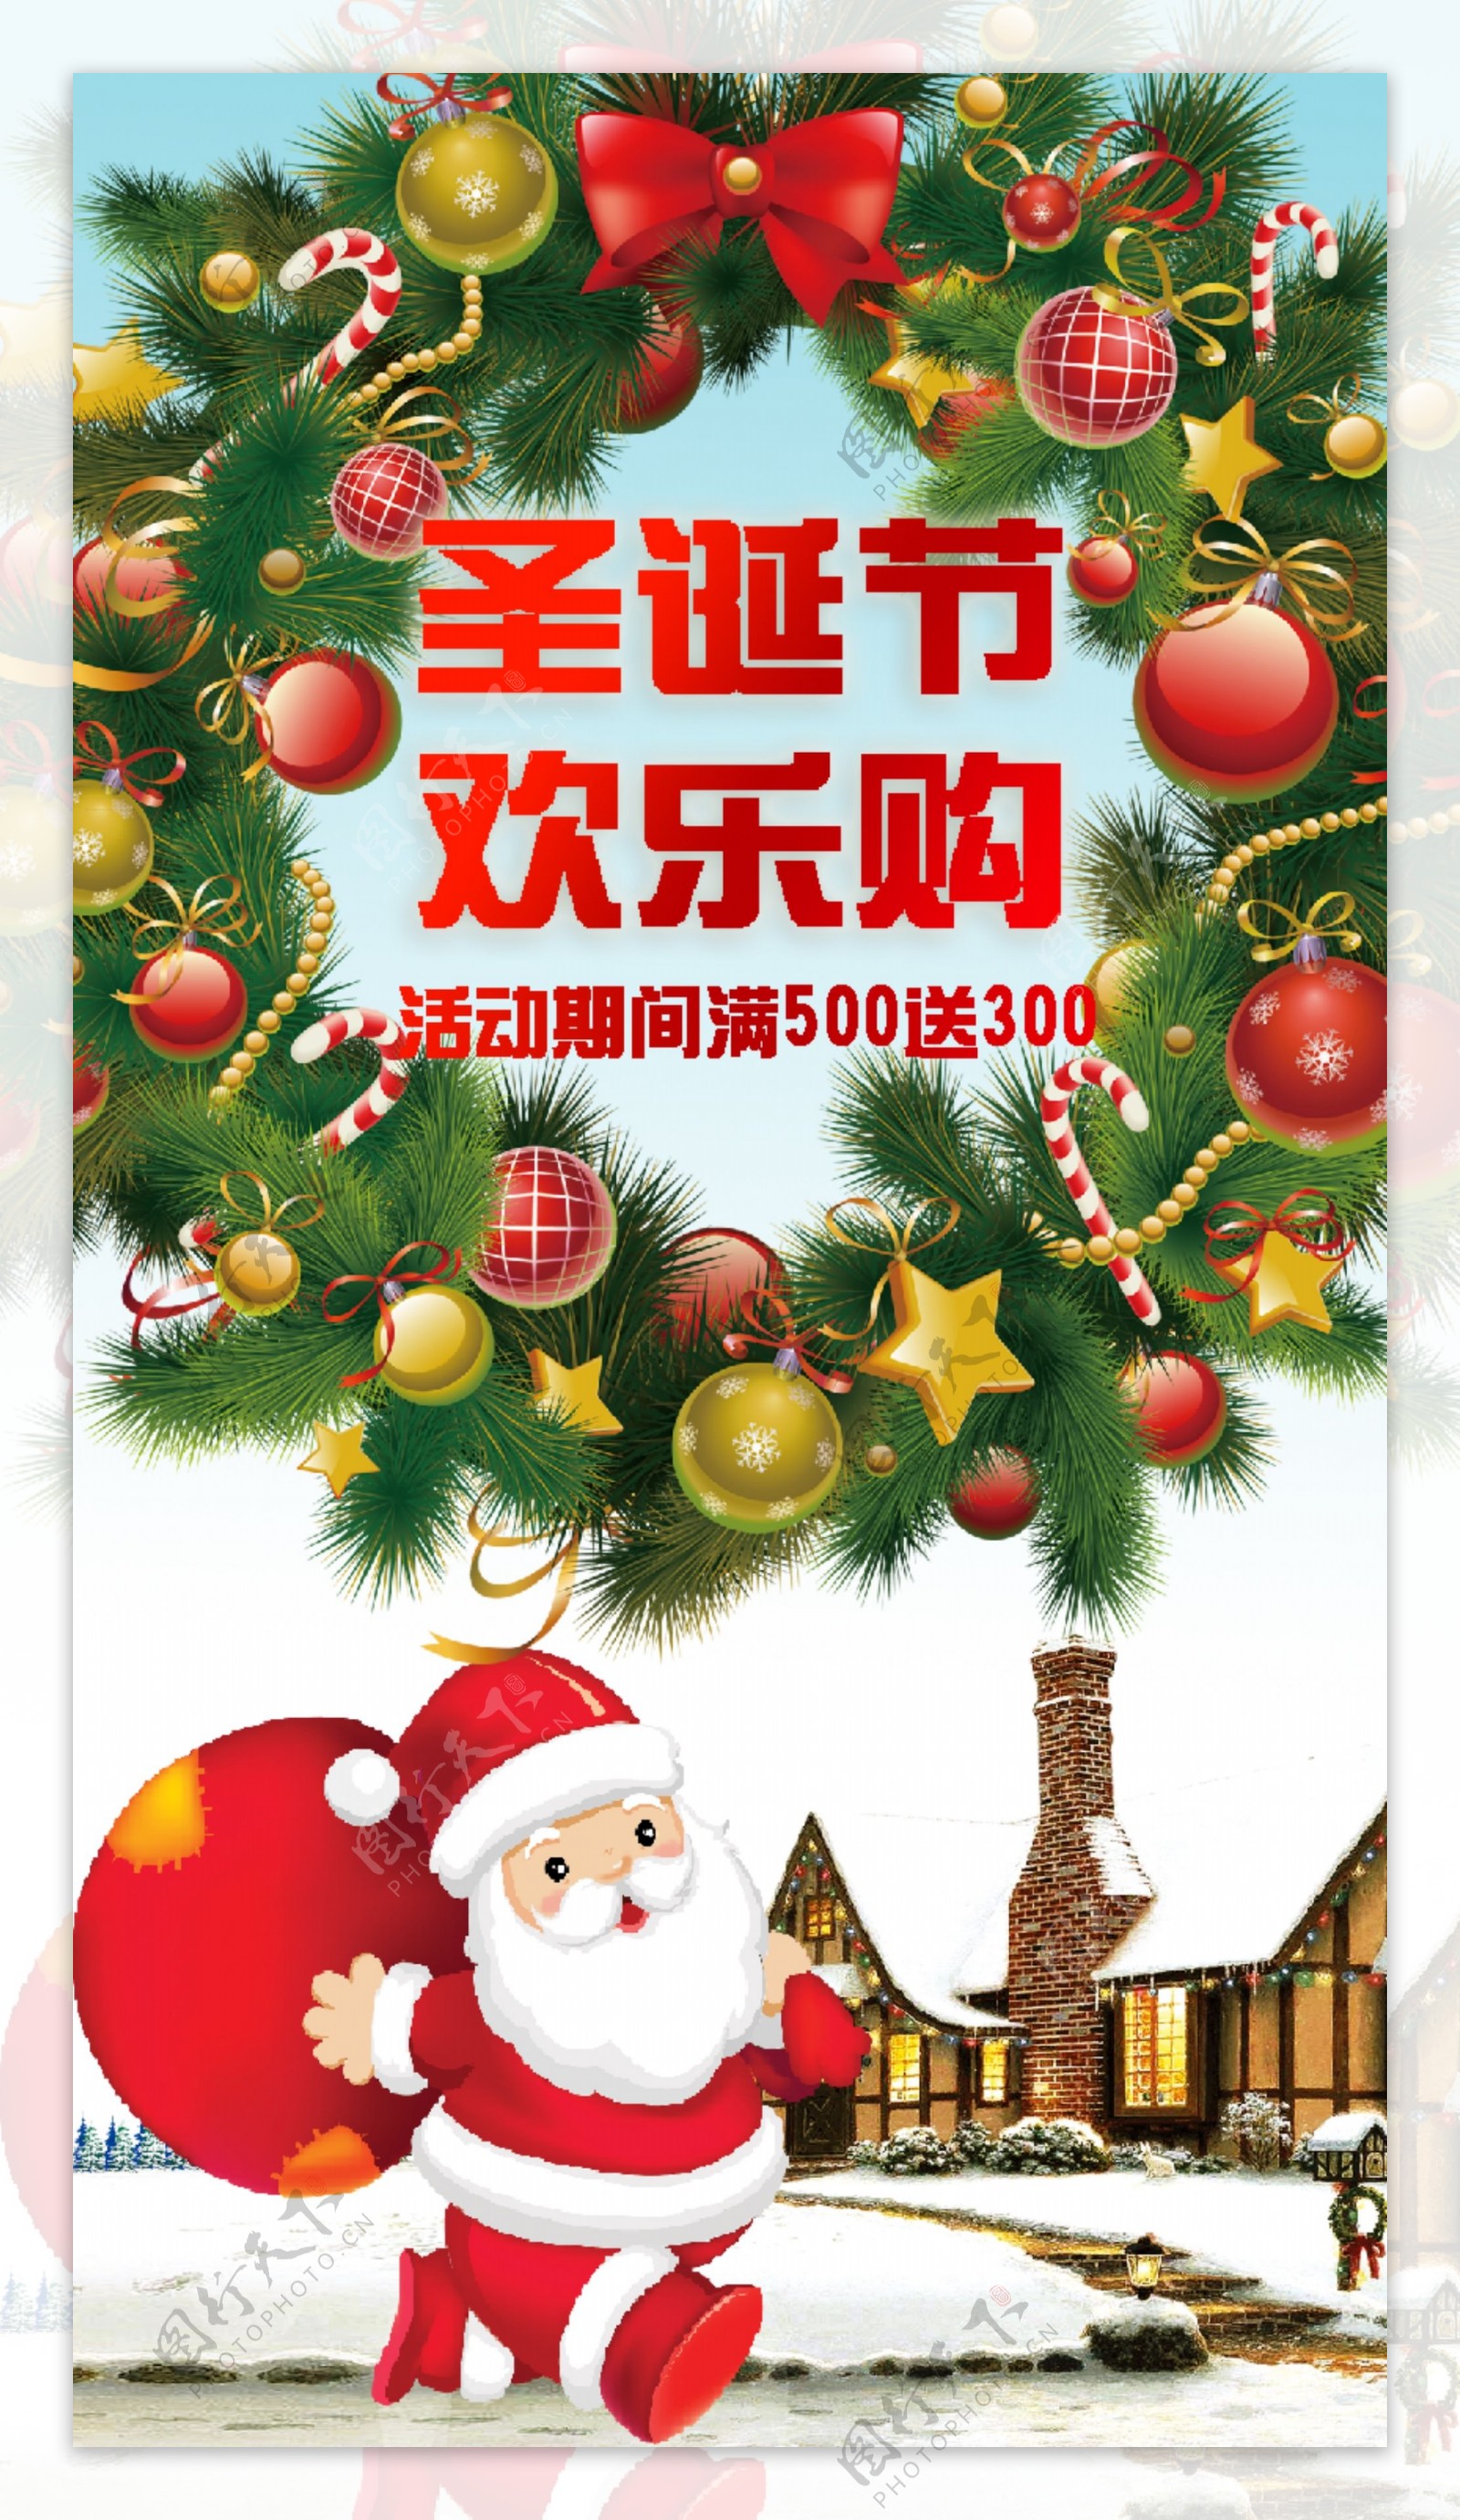 时尚新年圣诞节商业促销宣传海报